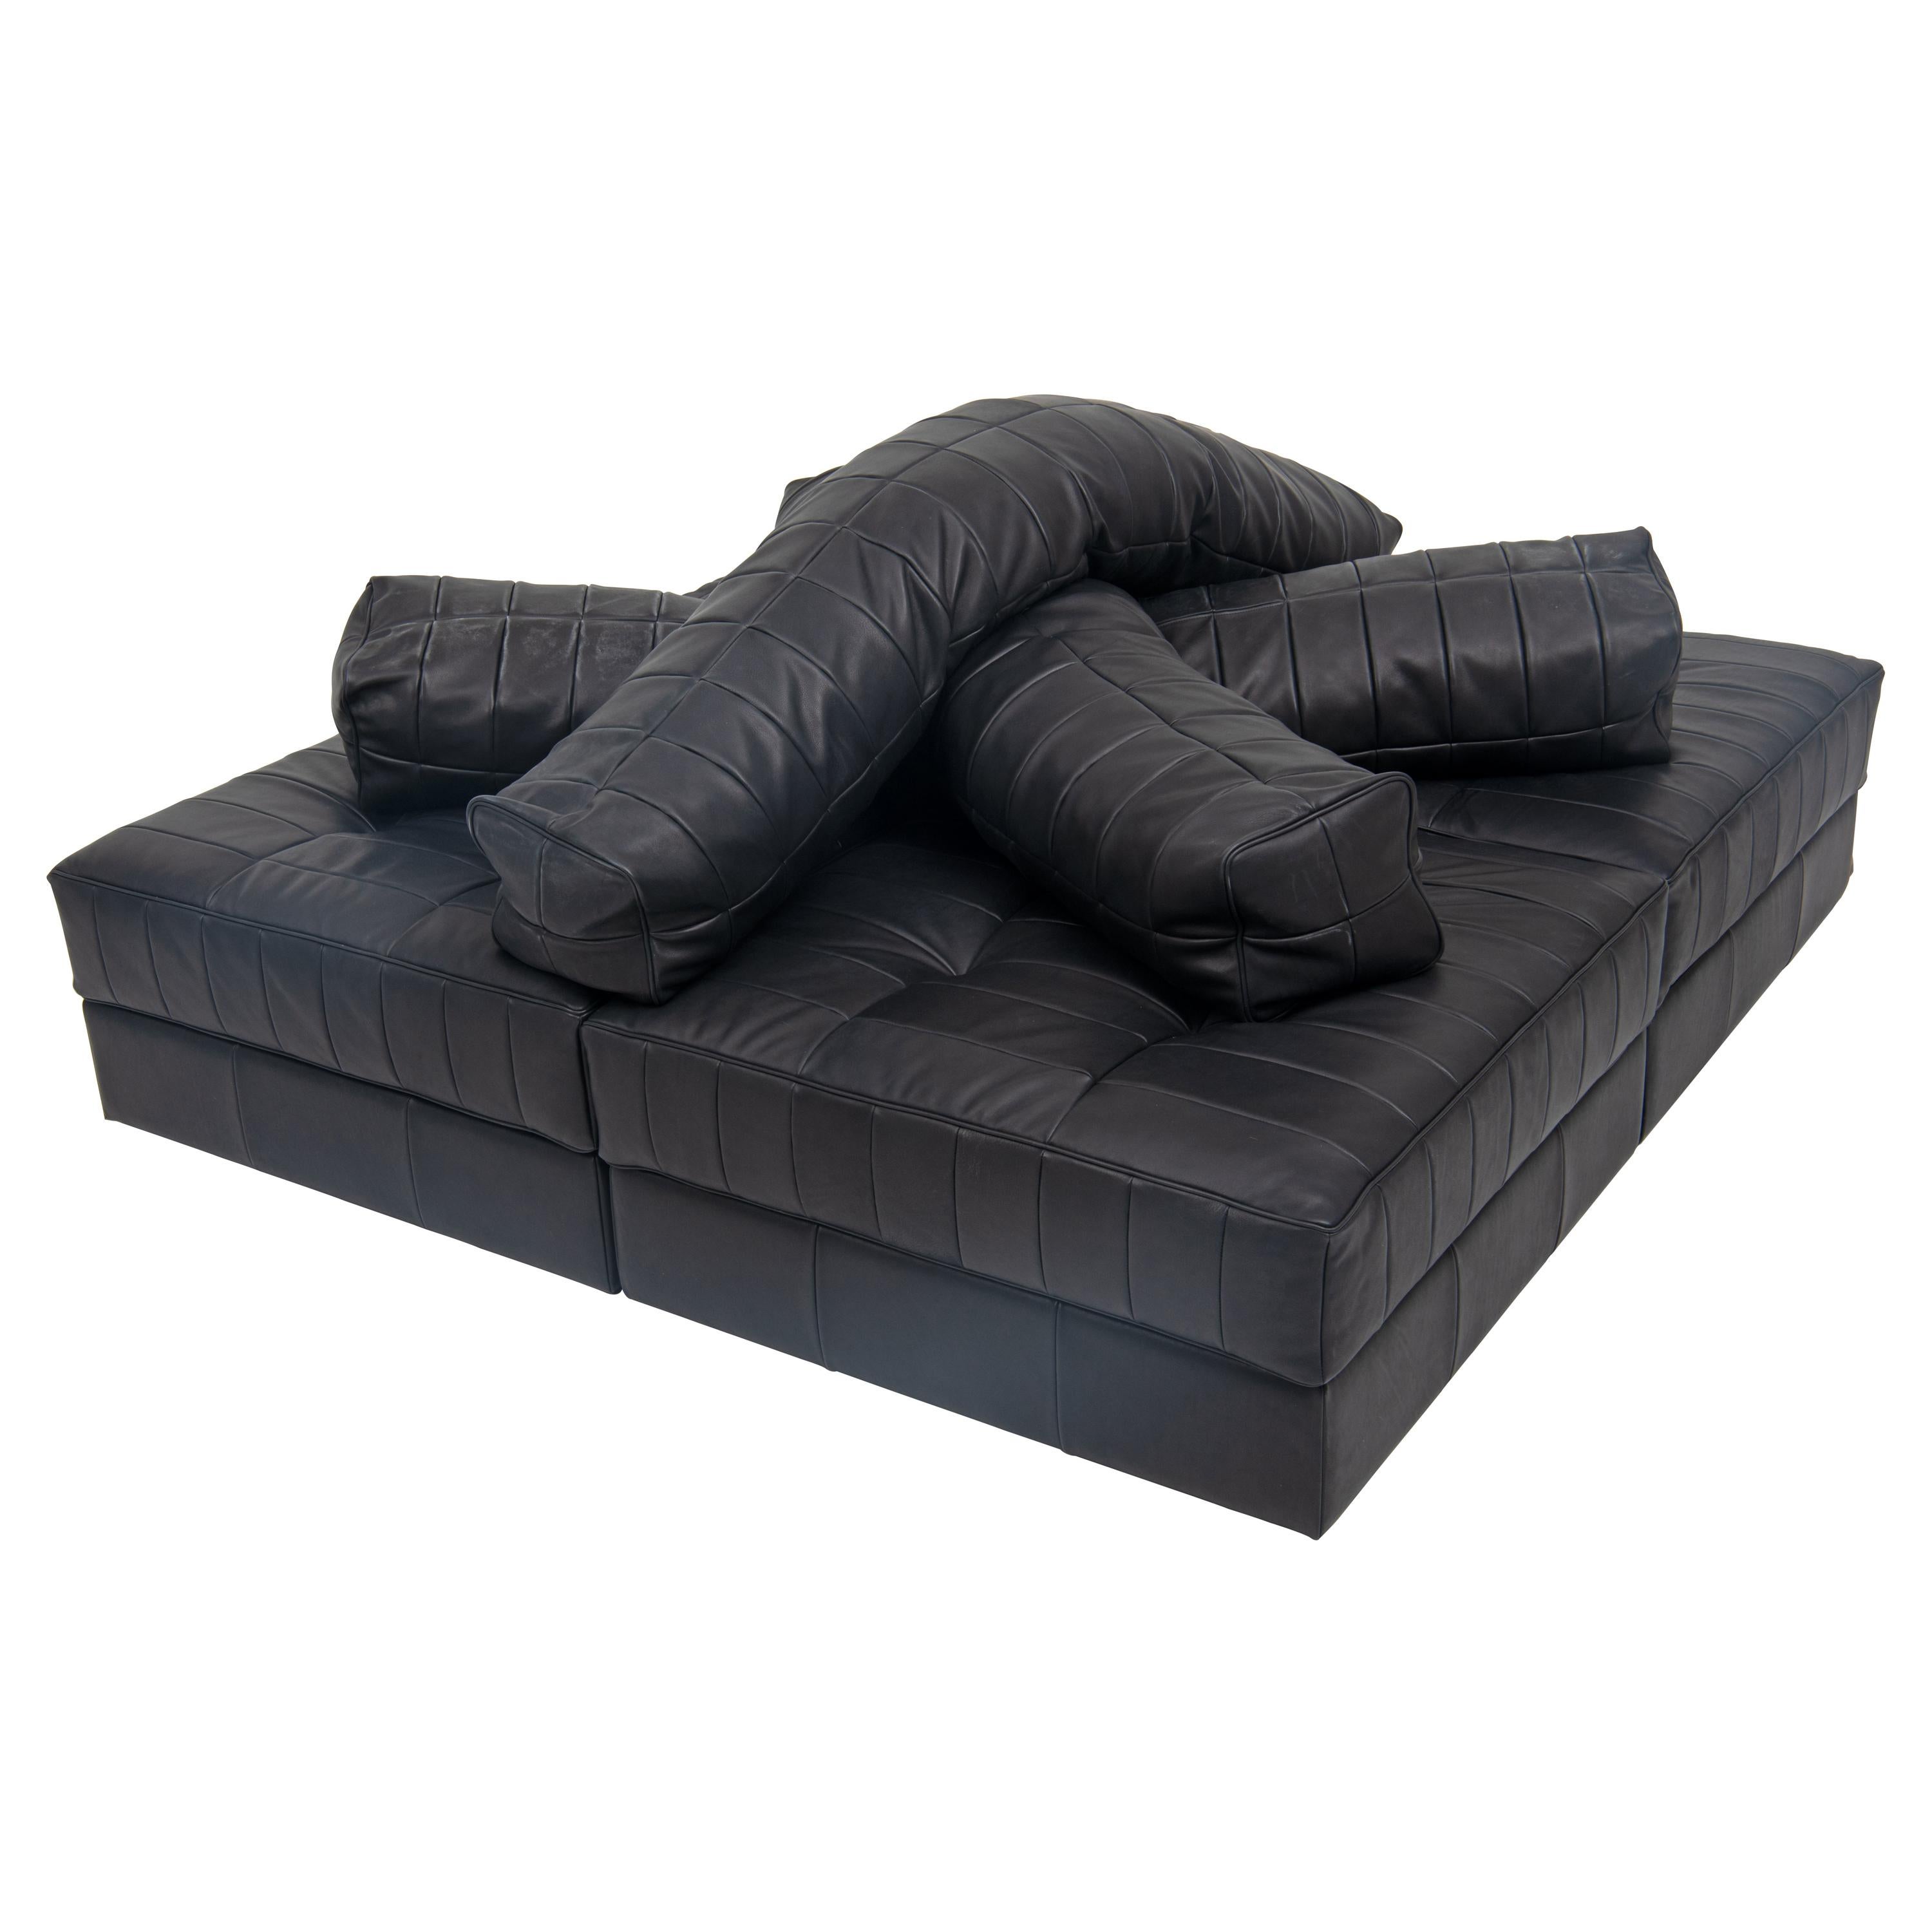 DS-1088 Sofa by De Sede For Sale